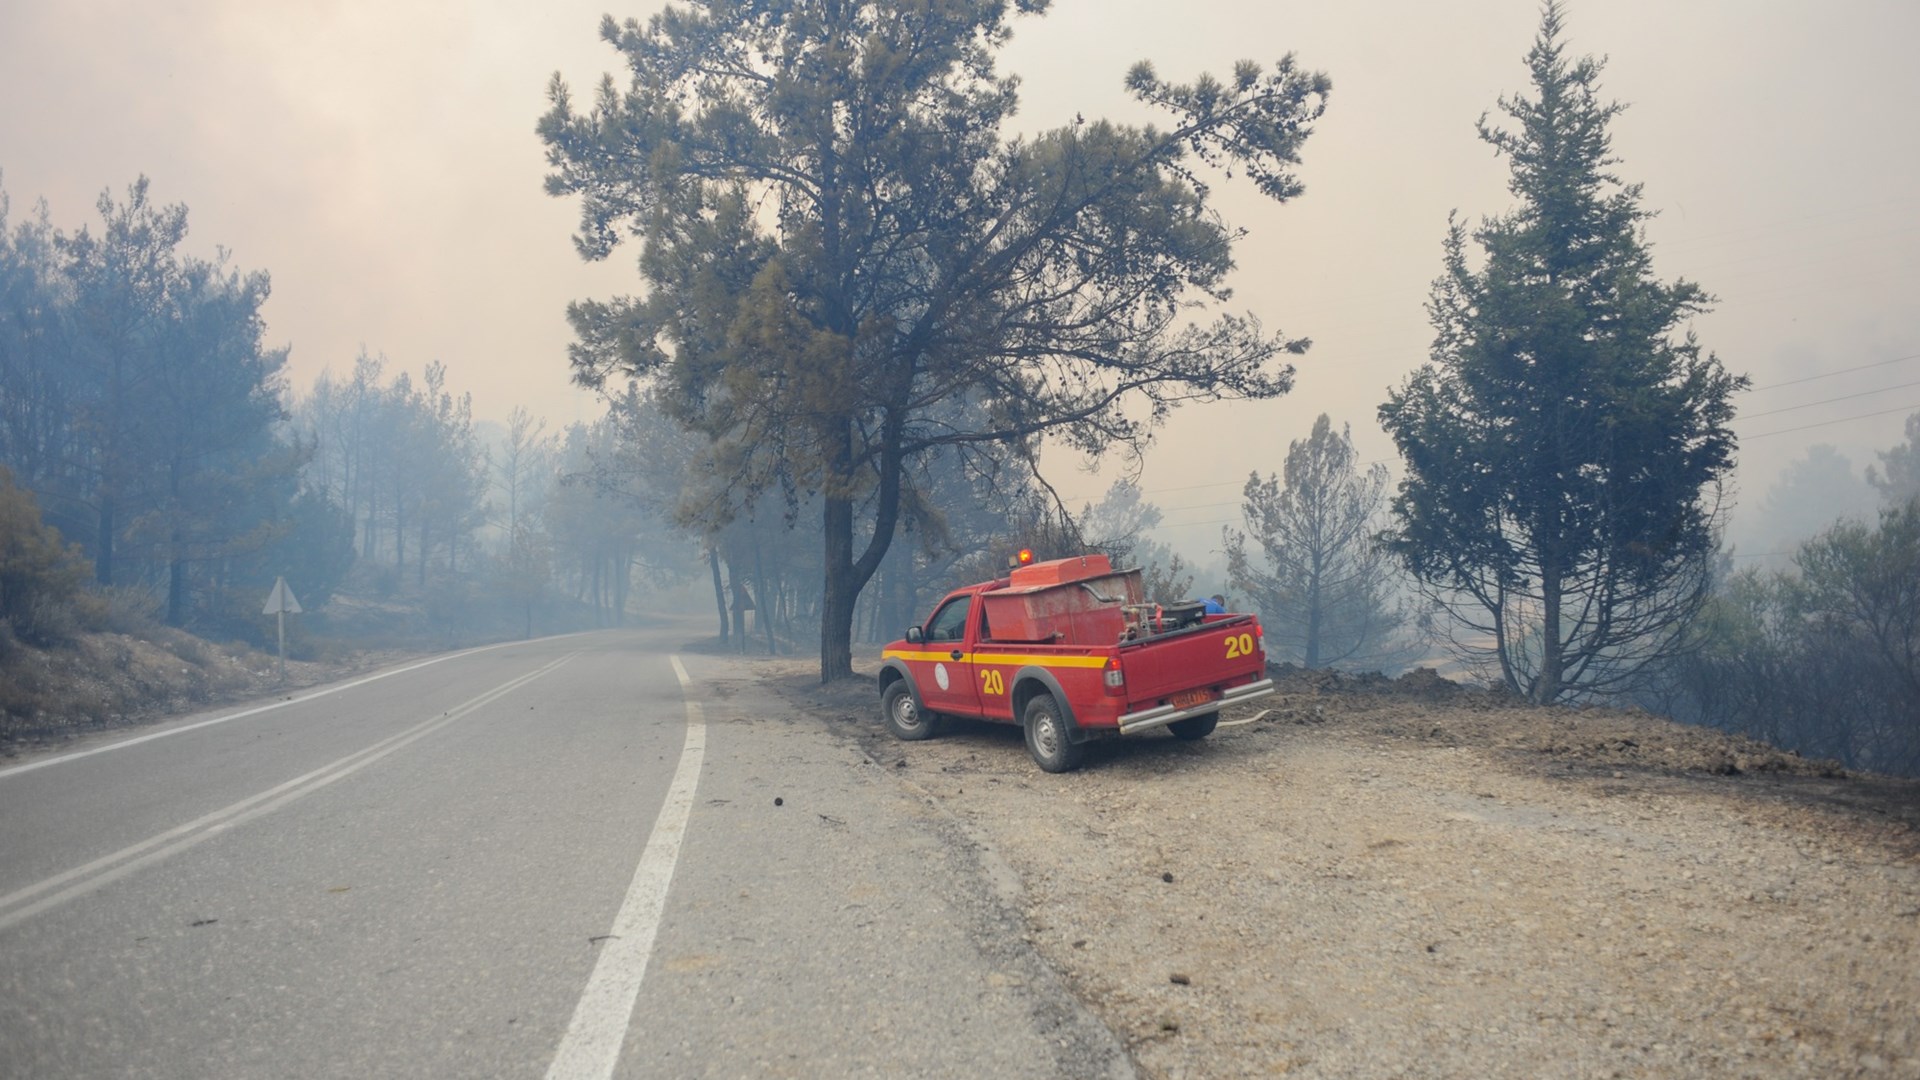 Εκτεταμένες αναζωπυρώσεις σε όλο το μέτωπο της φωτιάς στη Ρόδο